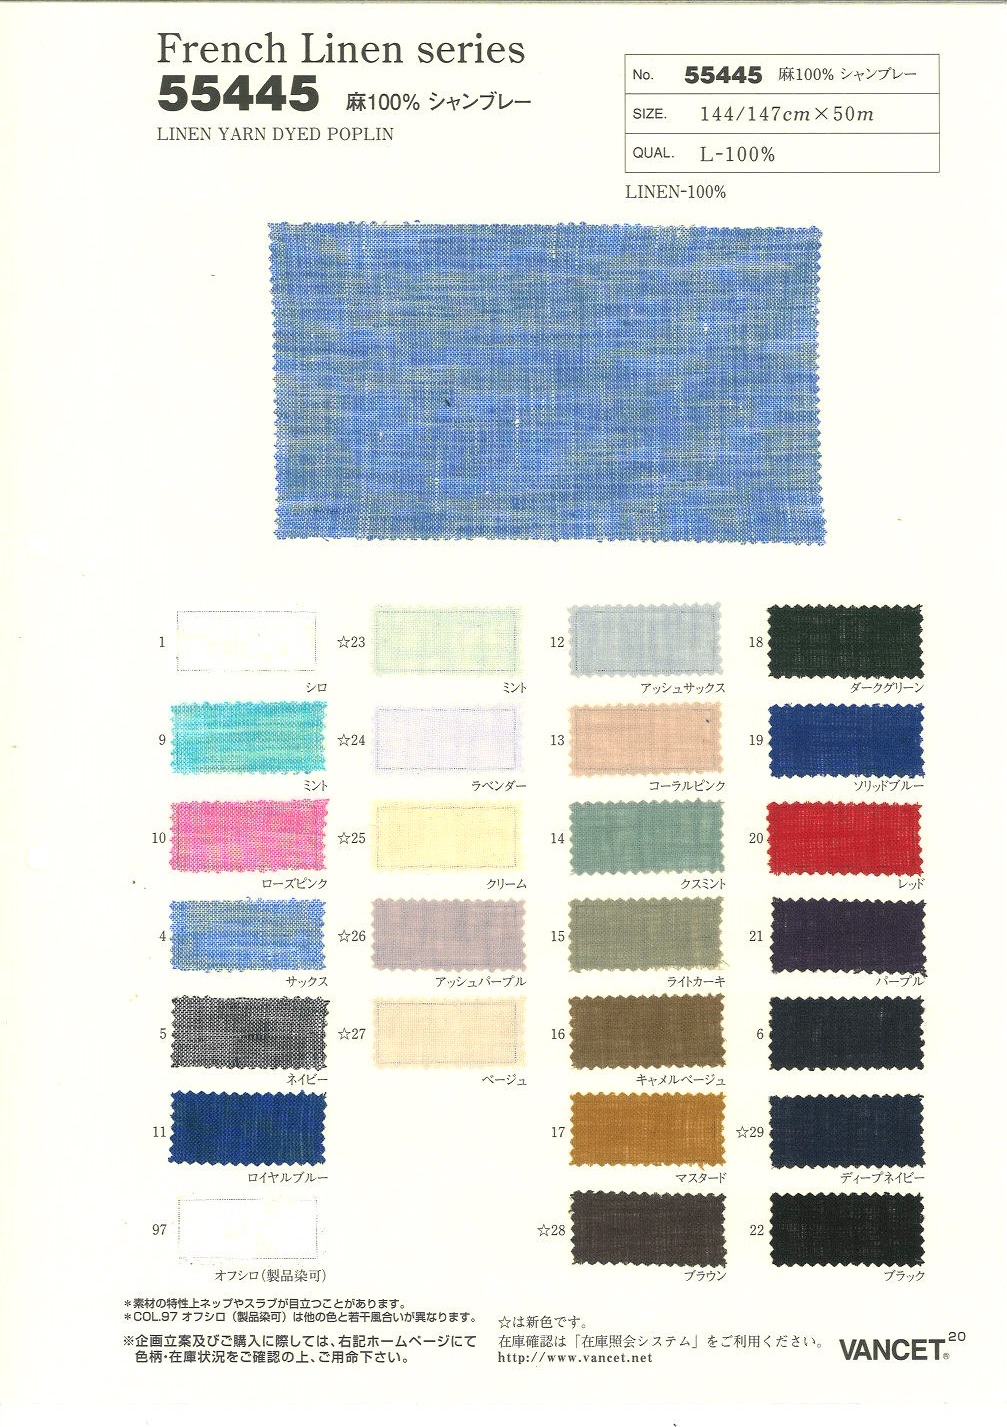 55445 Serie Lino Francés L100% Chambray[Fabrica Textil] VANCET